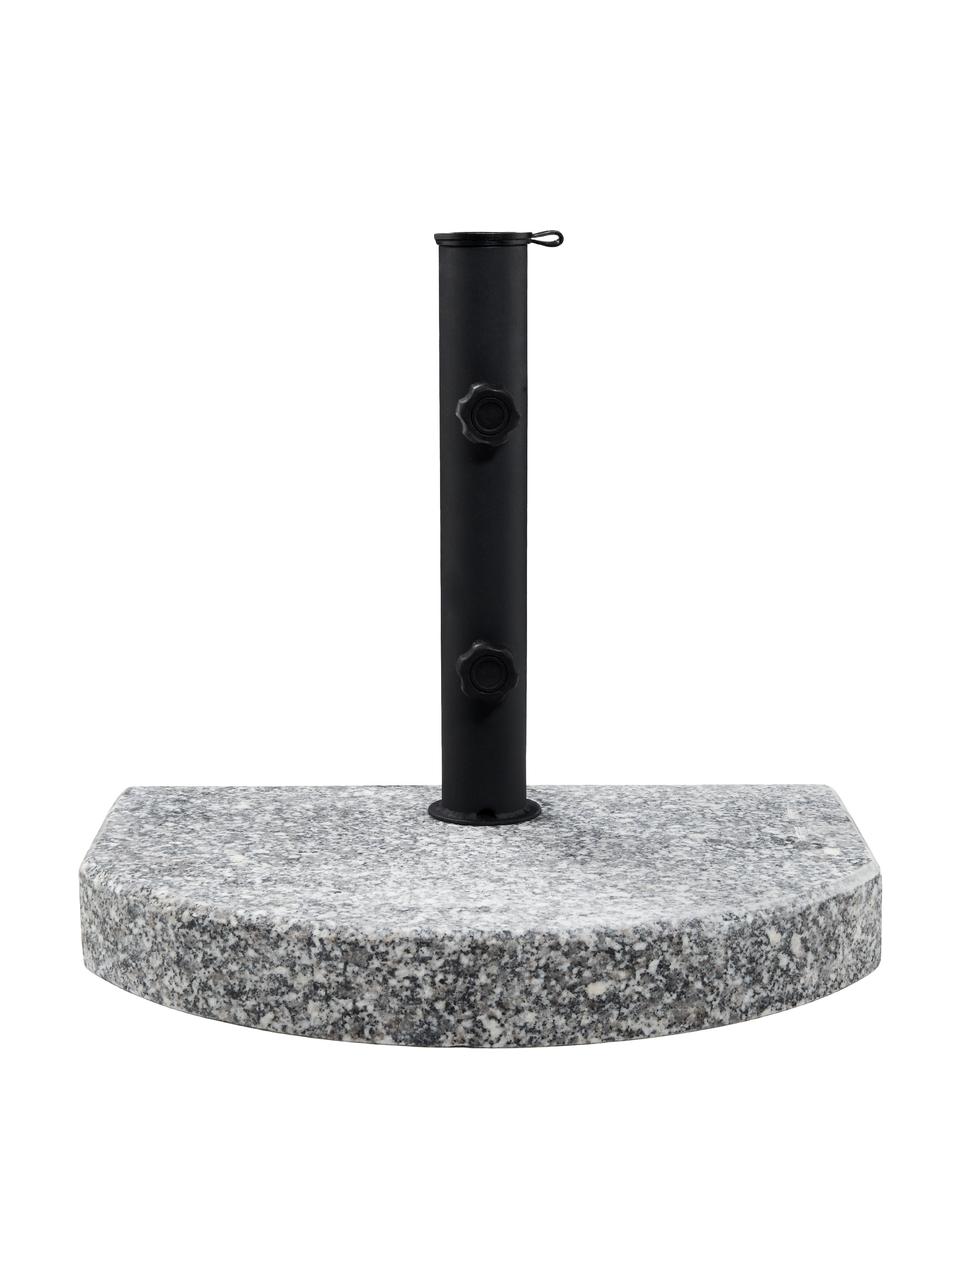 Parapluhouder The Rock, Graniet, gecoat staal, Grijs, zwart, 40 x 33 cm